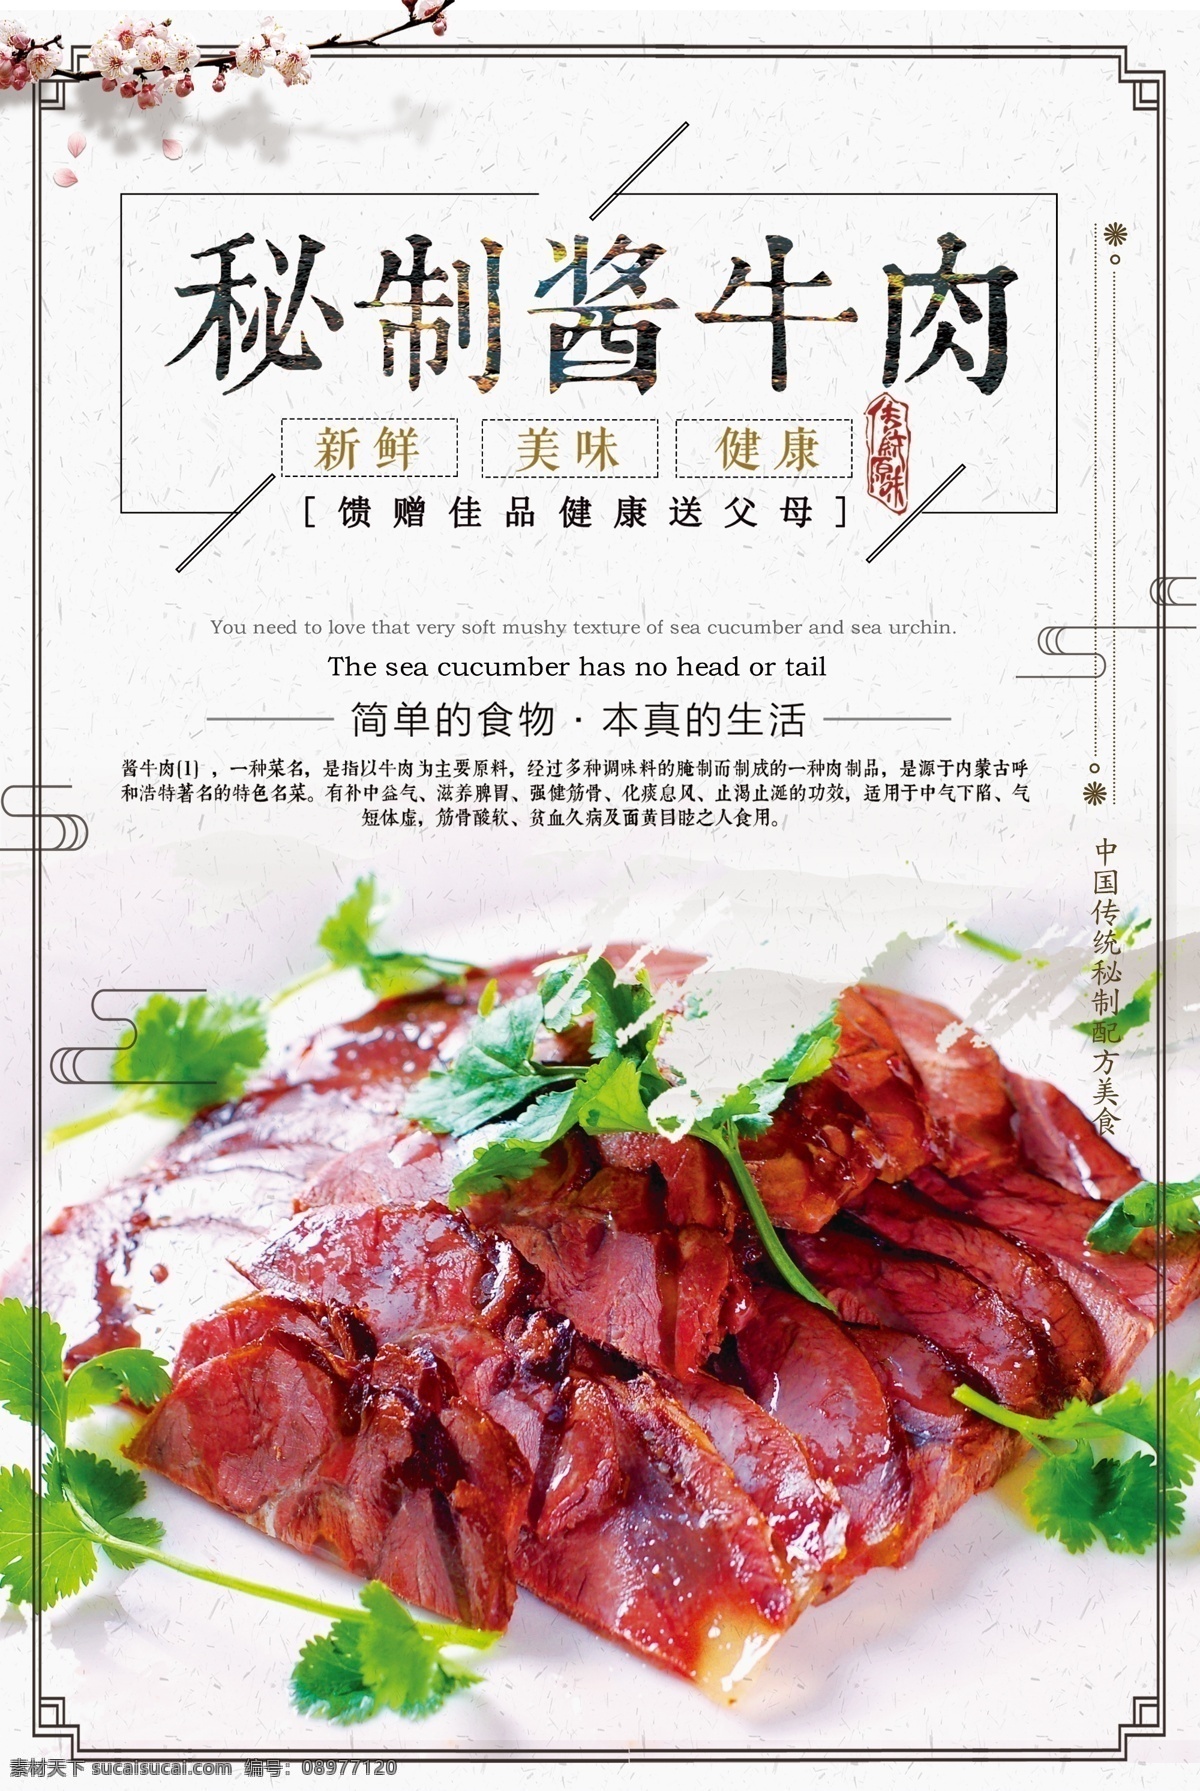 中国 风 传统 酱 牛肉 做法 美食 海报 中国风 美食海报 中国传统 牛肉干 传统风格海报 酱牛肉 美食中国 中国风传统